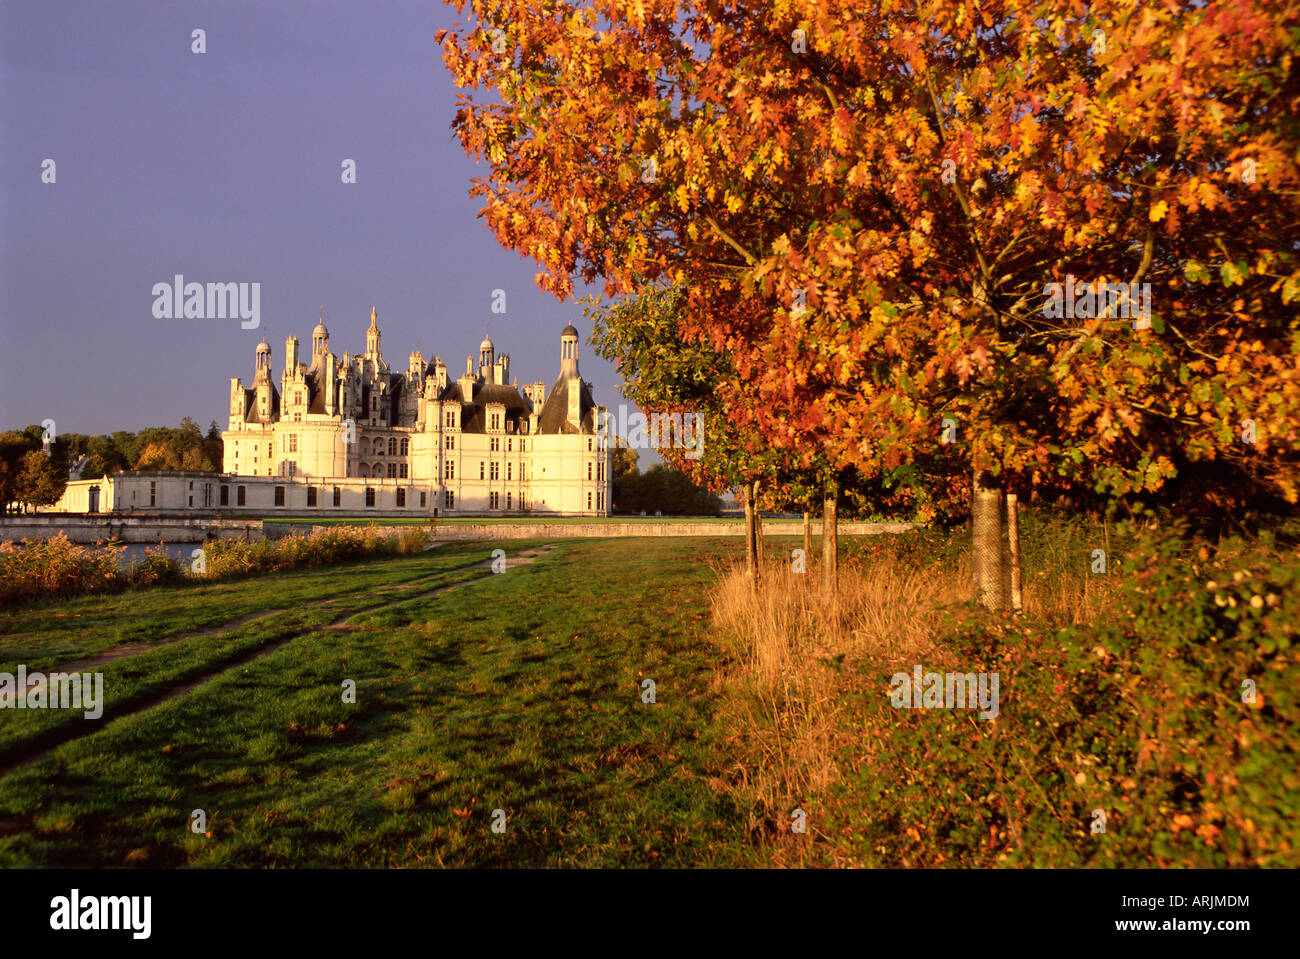 Chateau of Chambord, UNESCO World Heritage Site, Loir et Cher, Region de la Loire, Loire Valley, France, Europe Stock Photo